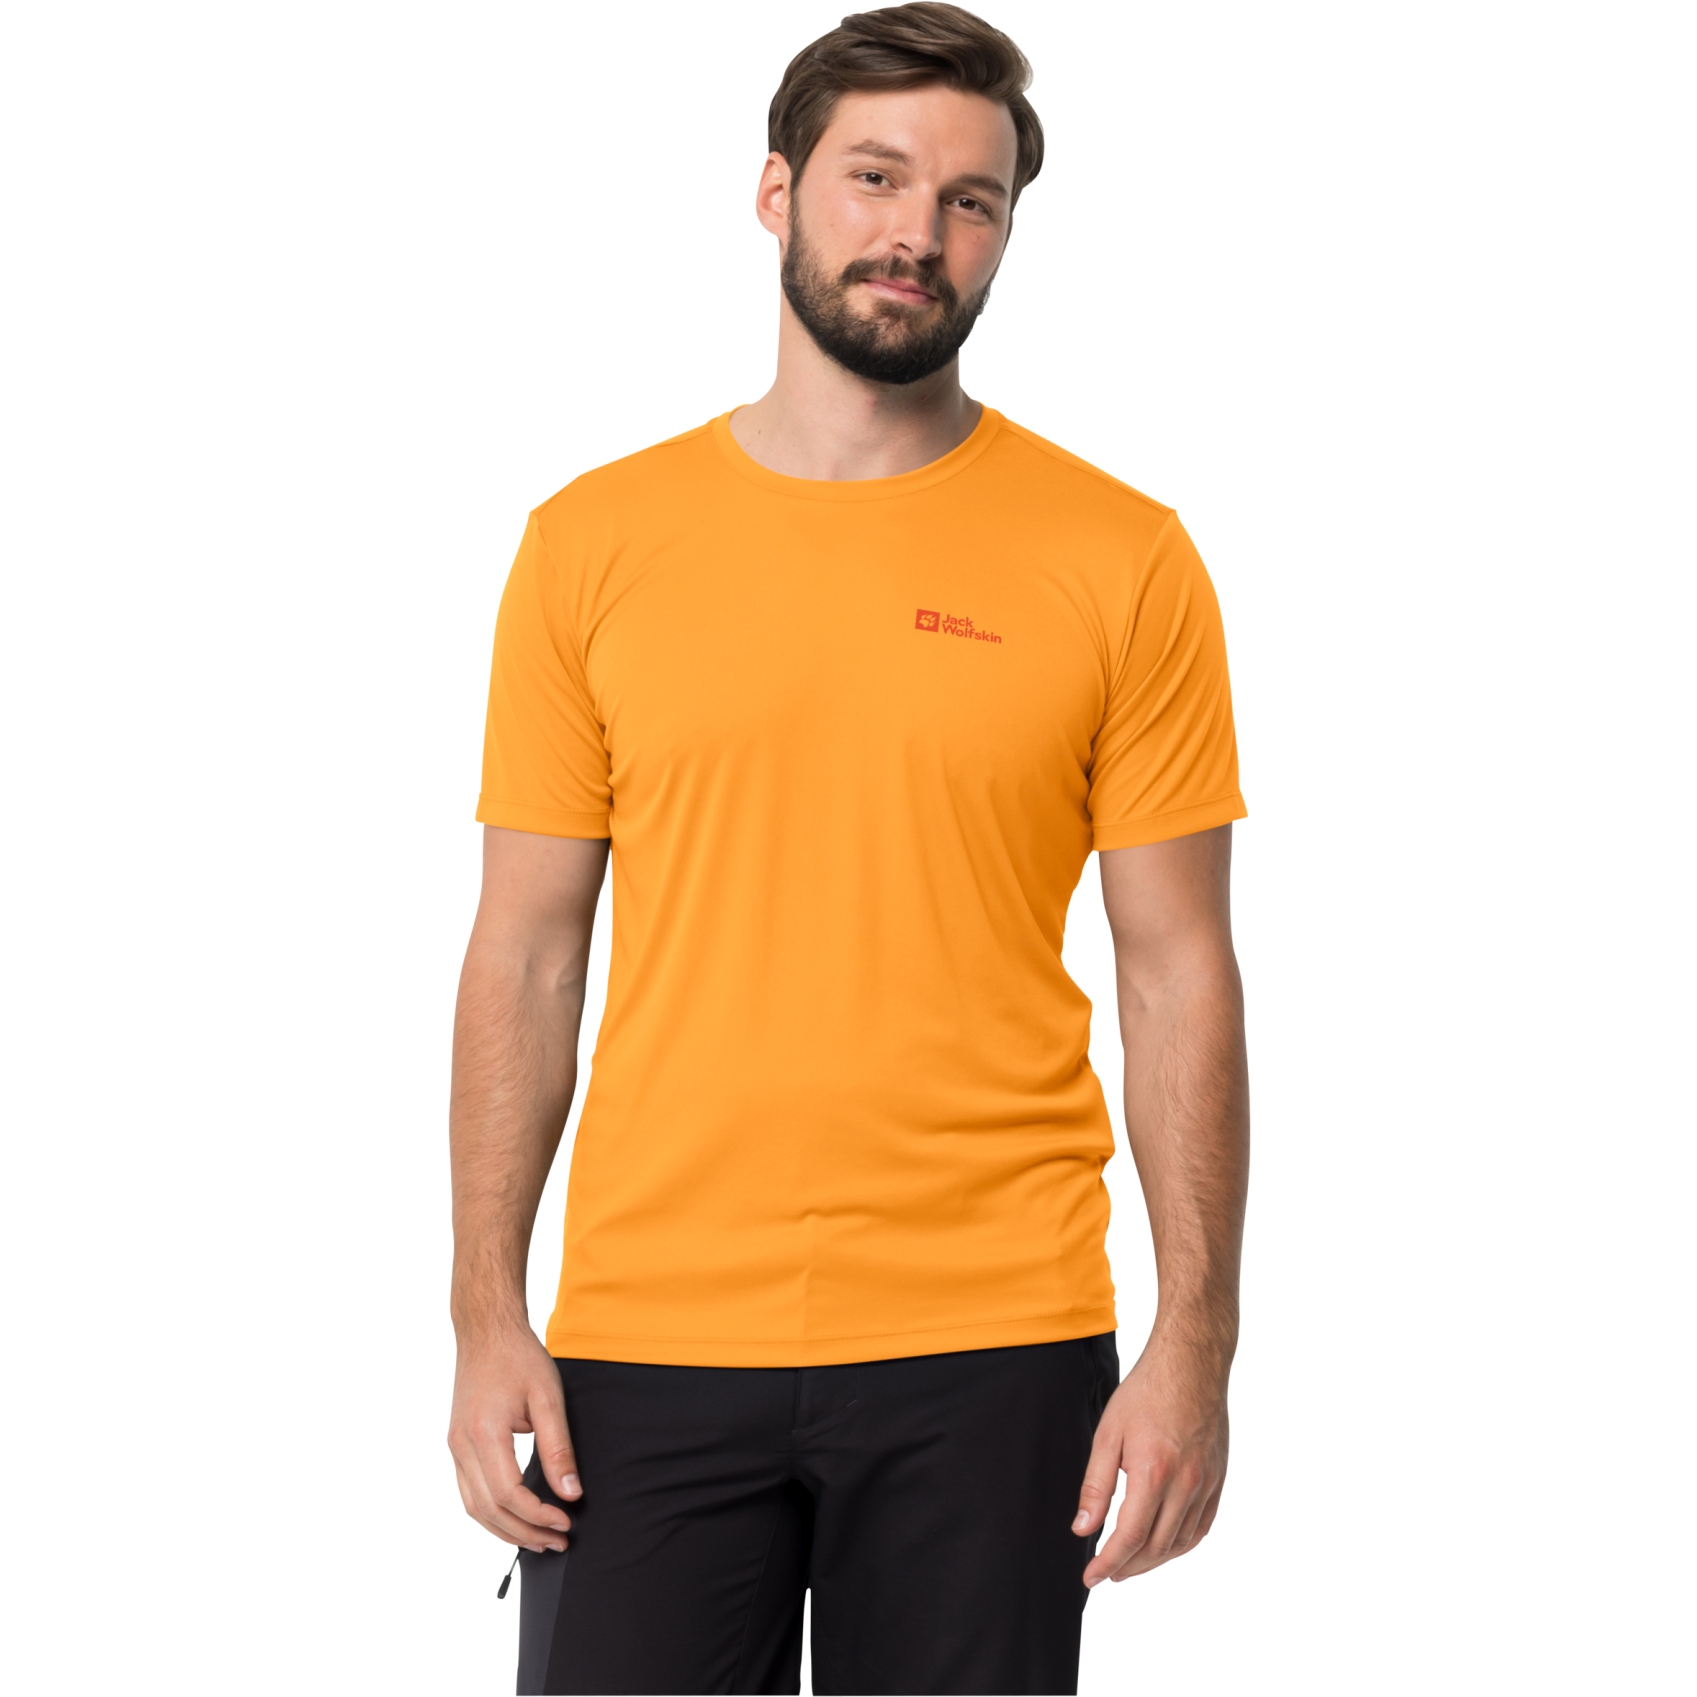 Productfoto van Jack Wolfskin Tech T-Shirt Heren - oranje pop